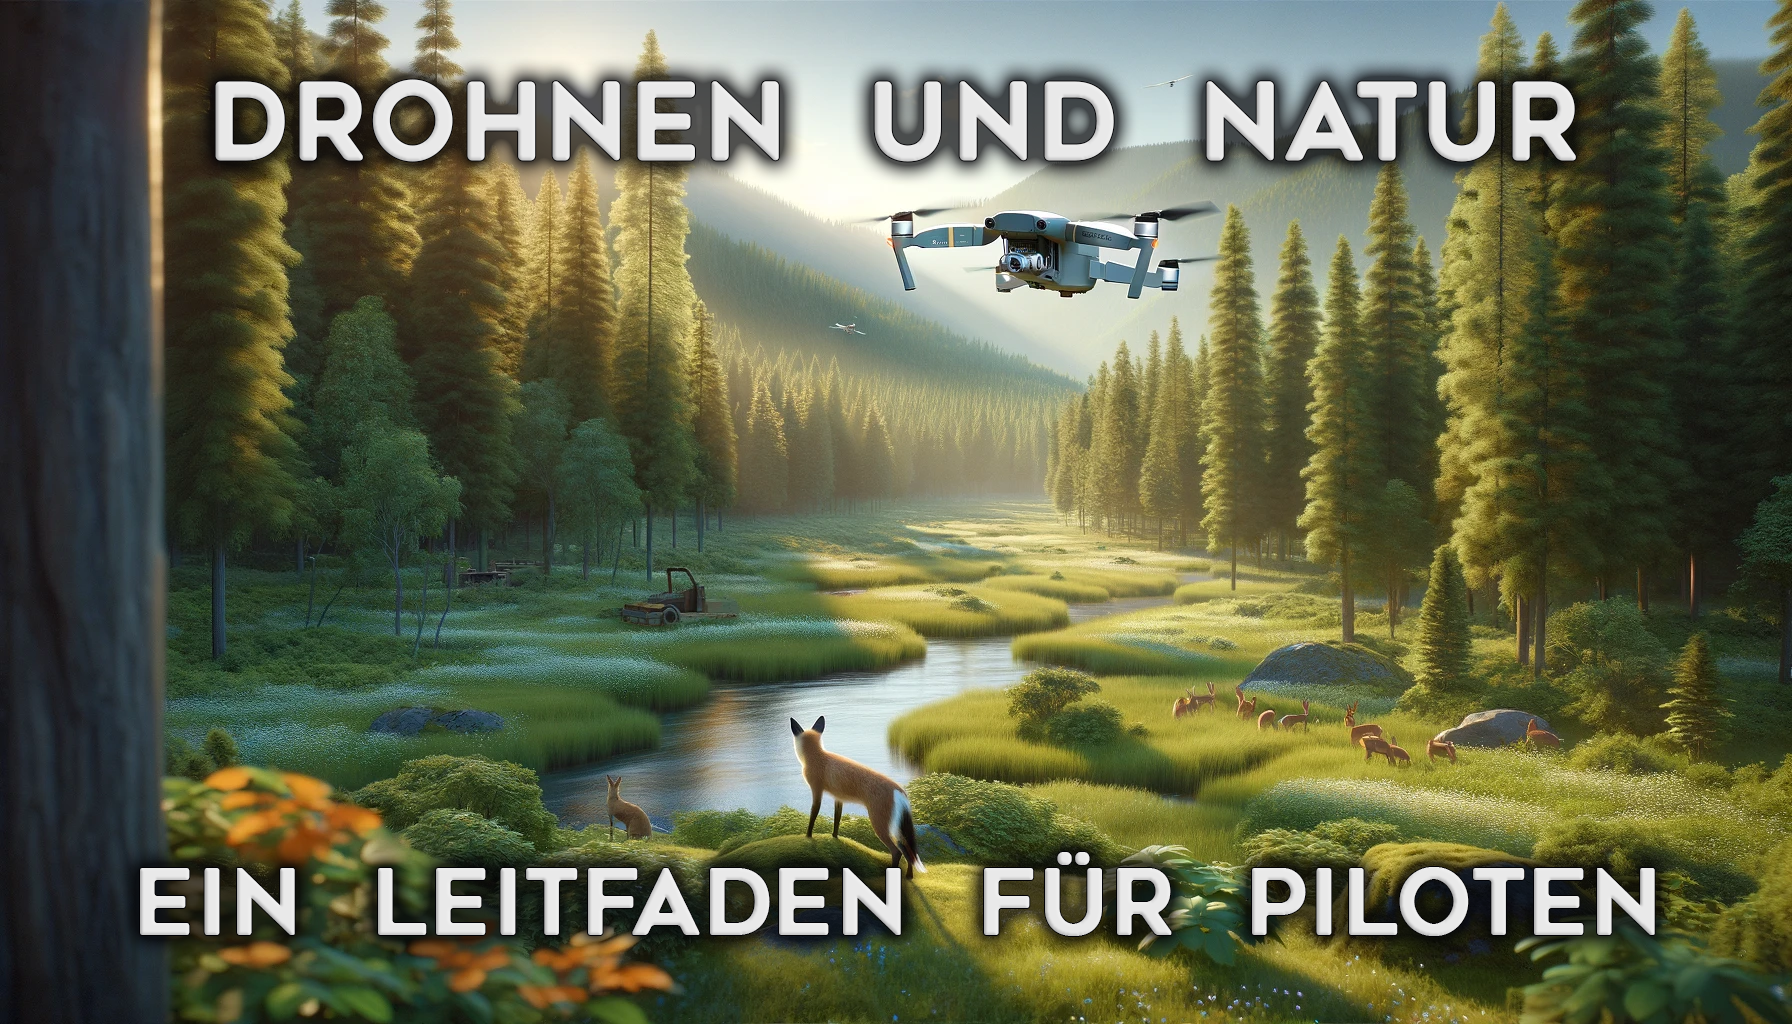 Drohnen und die Natur - ein Leitfaden für Drohnenpiloten